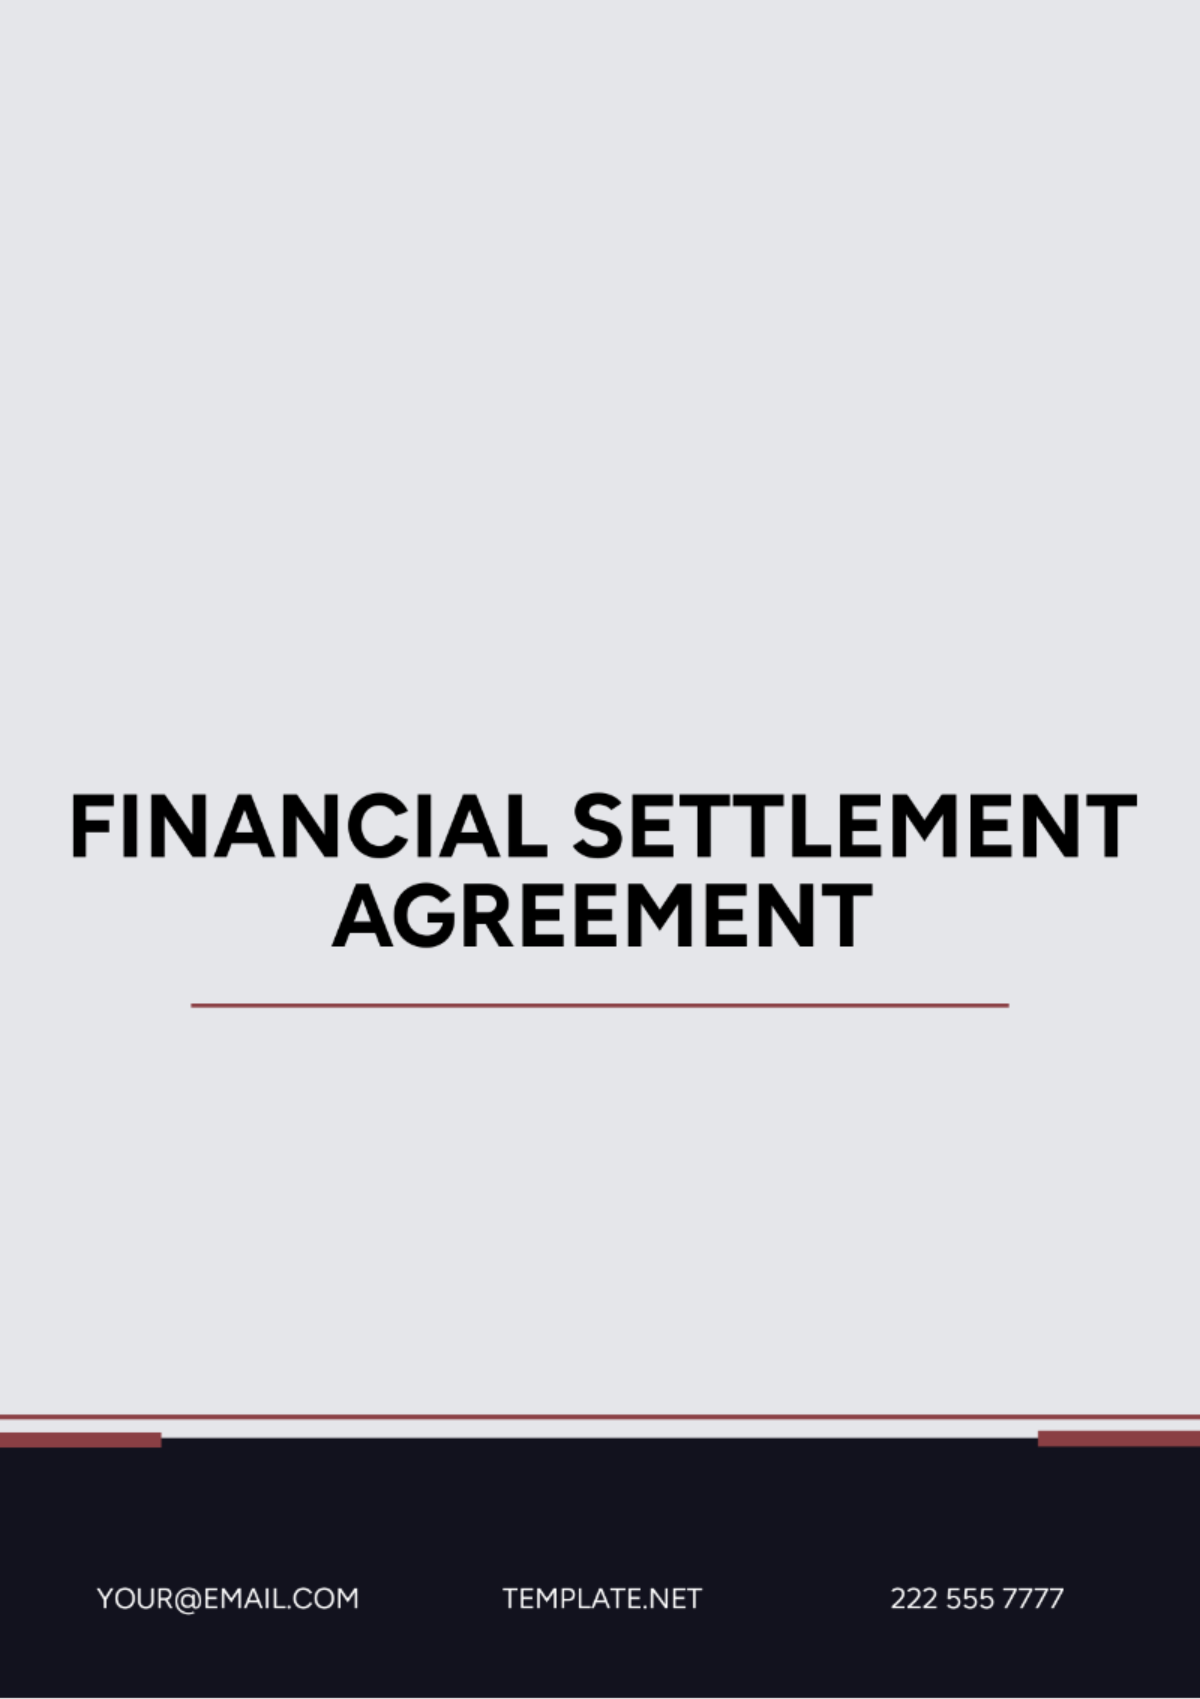 Free Financial Settlement Agreement Template